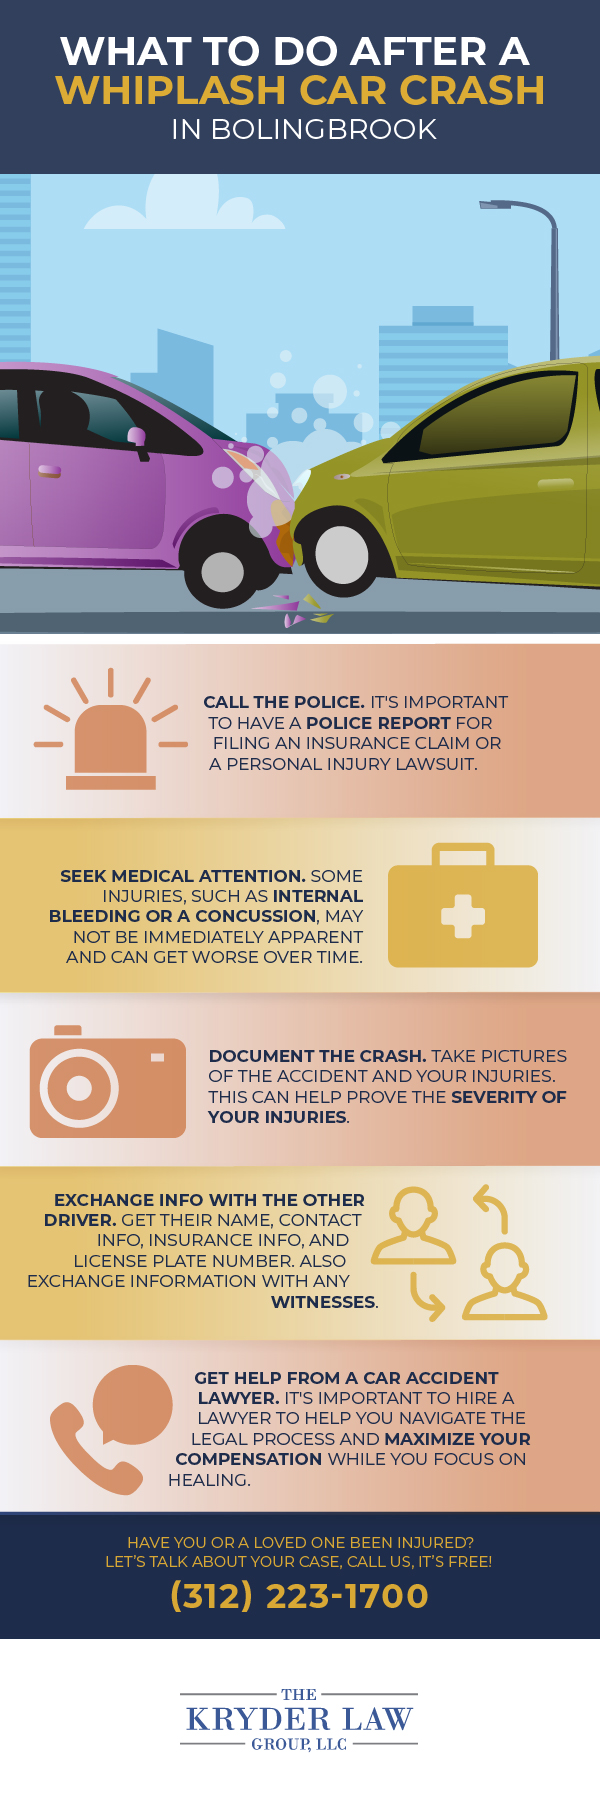 Infografía sobre qué hacer después de un accidente automovilístico por latigazo cervical en Bolingbrook